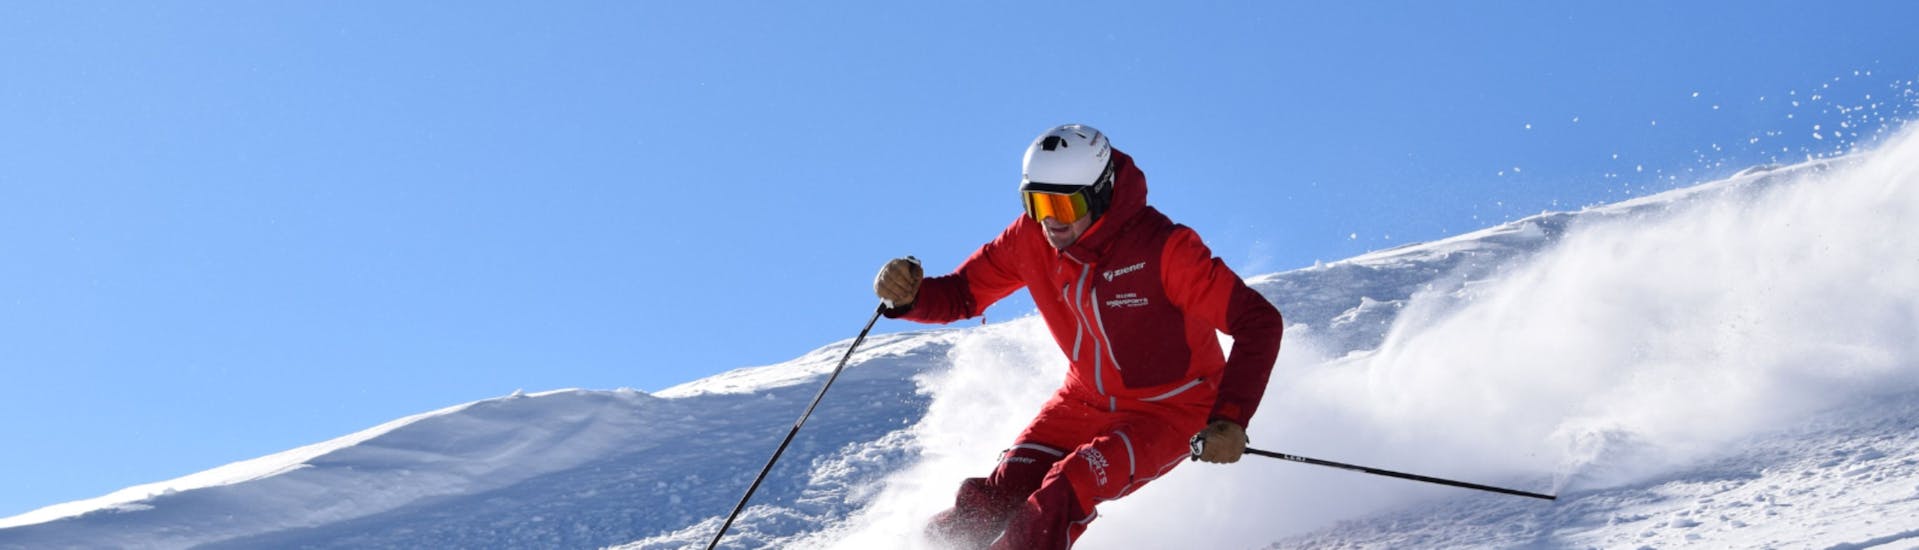 Skikurs für Erwachsene für Skifahrer mit Erfahrung.